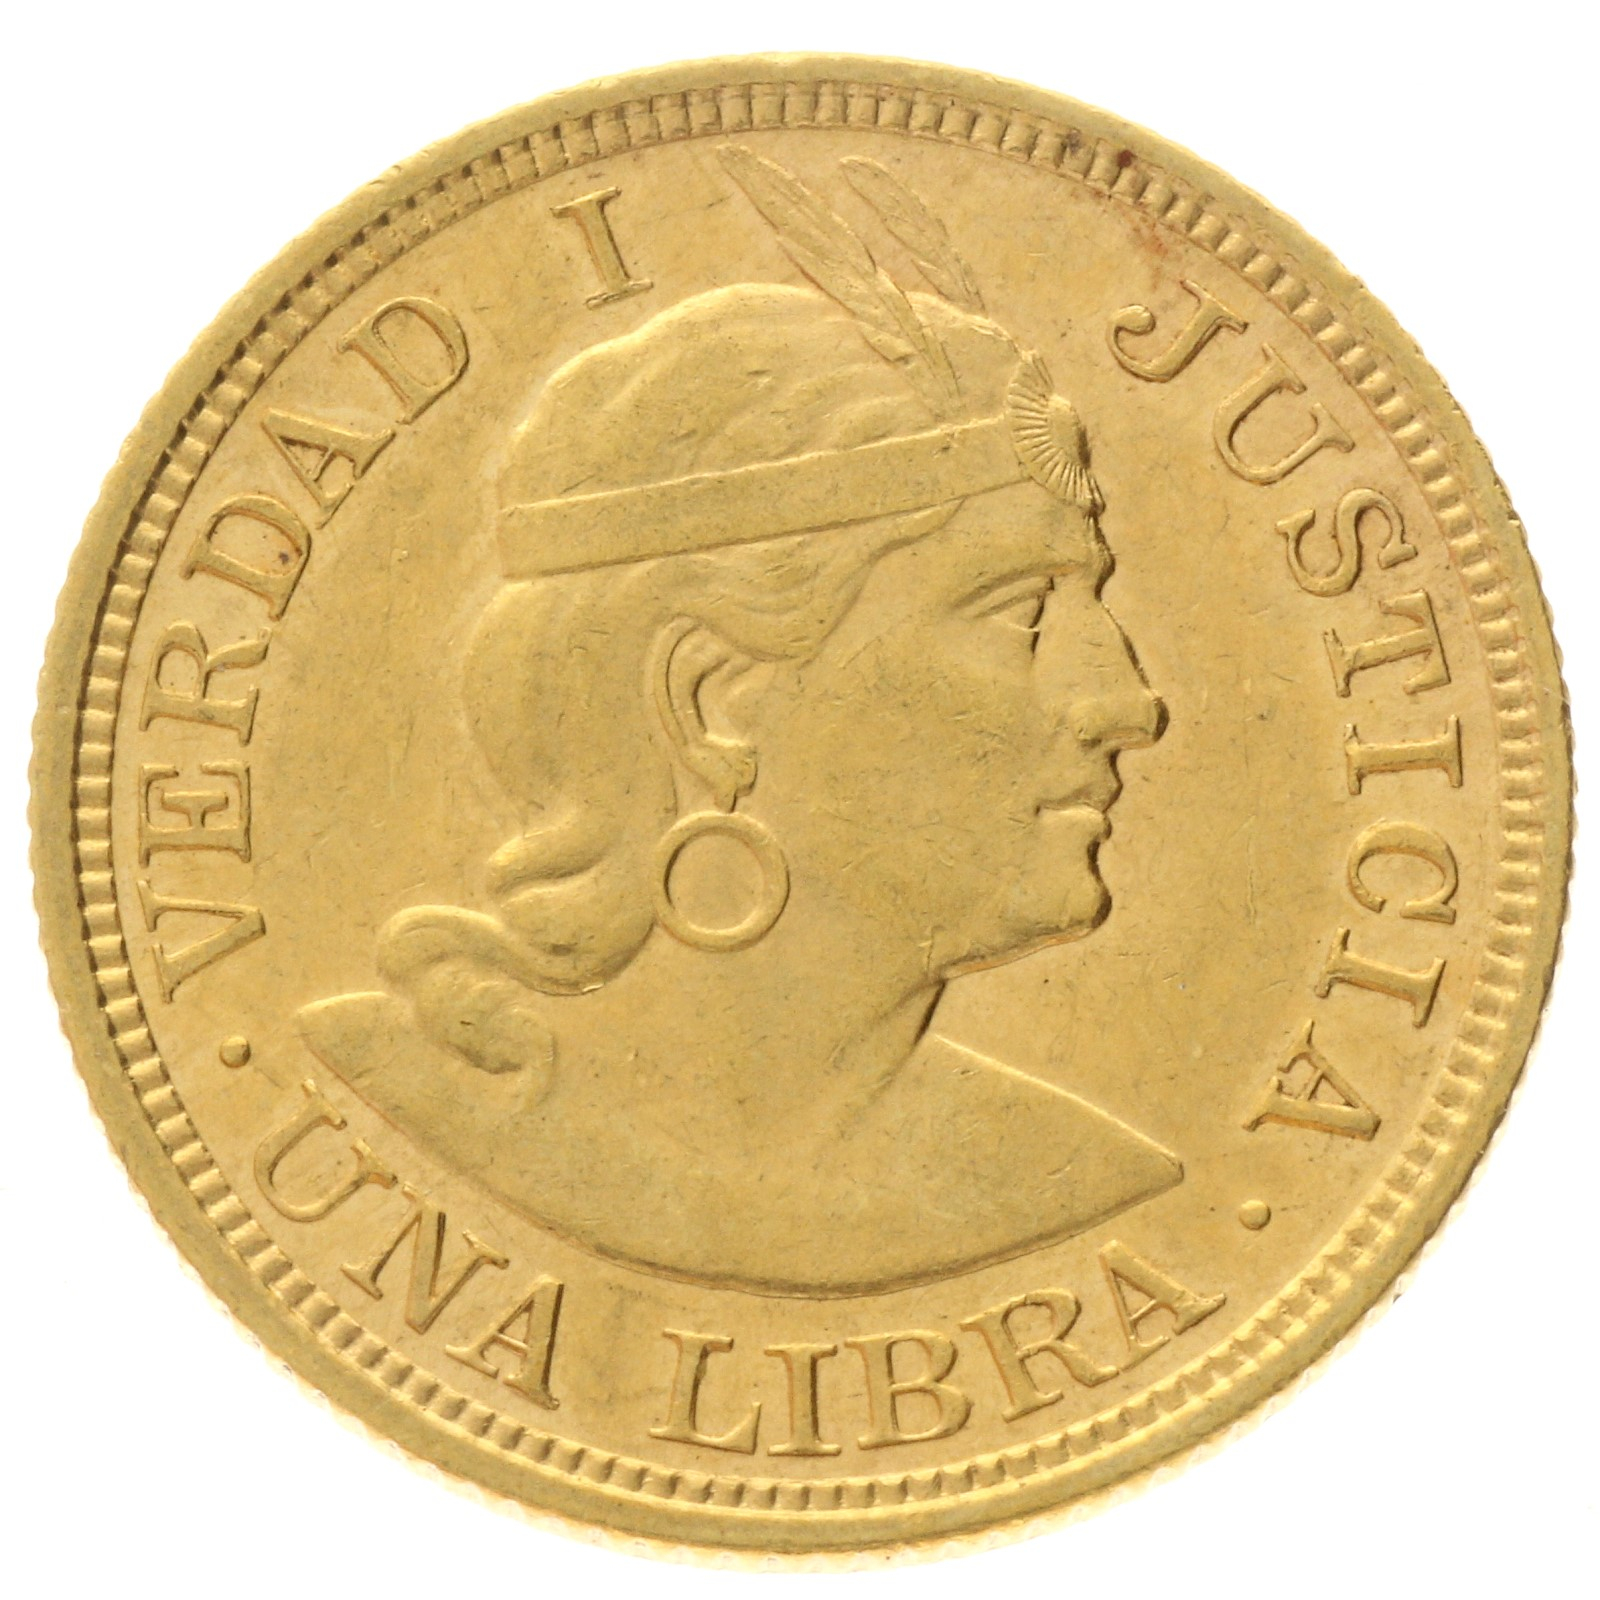 Peru - 1 libra - 1916